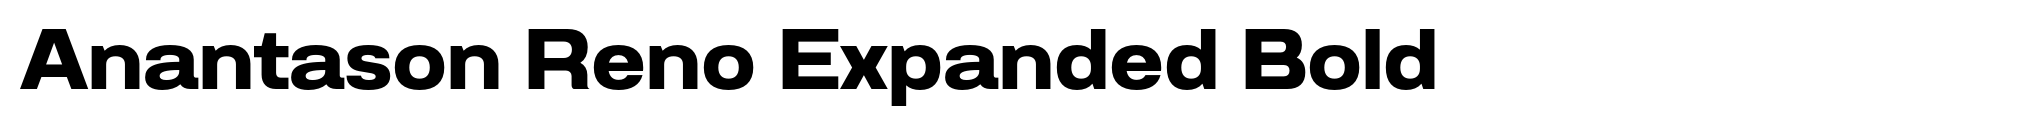 Anantason Reno Expanded Bold image